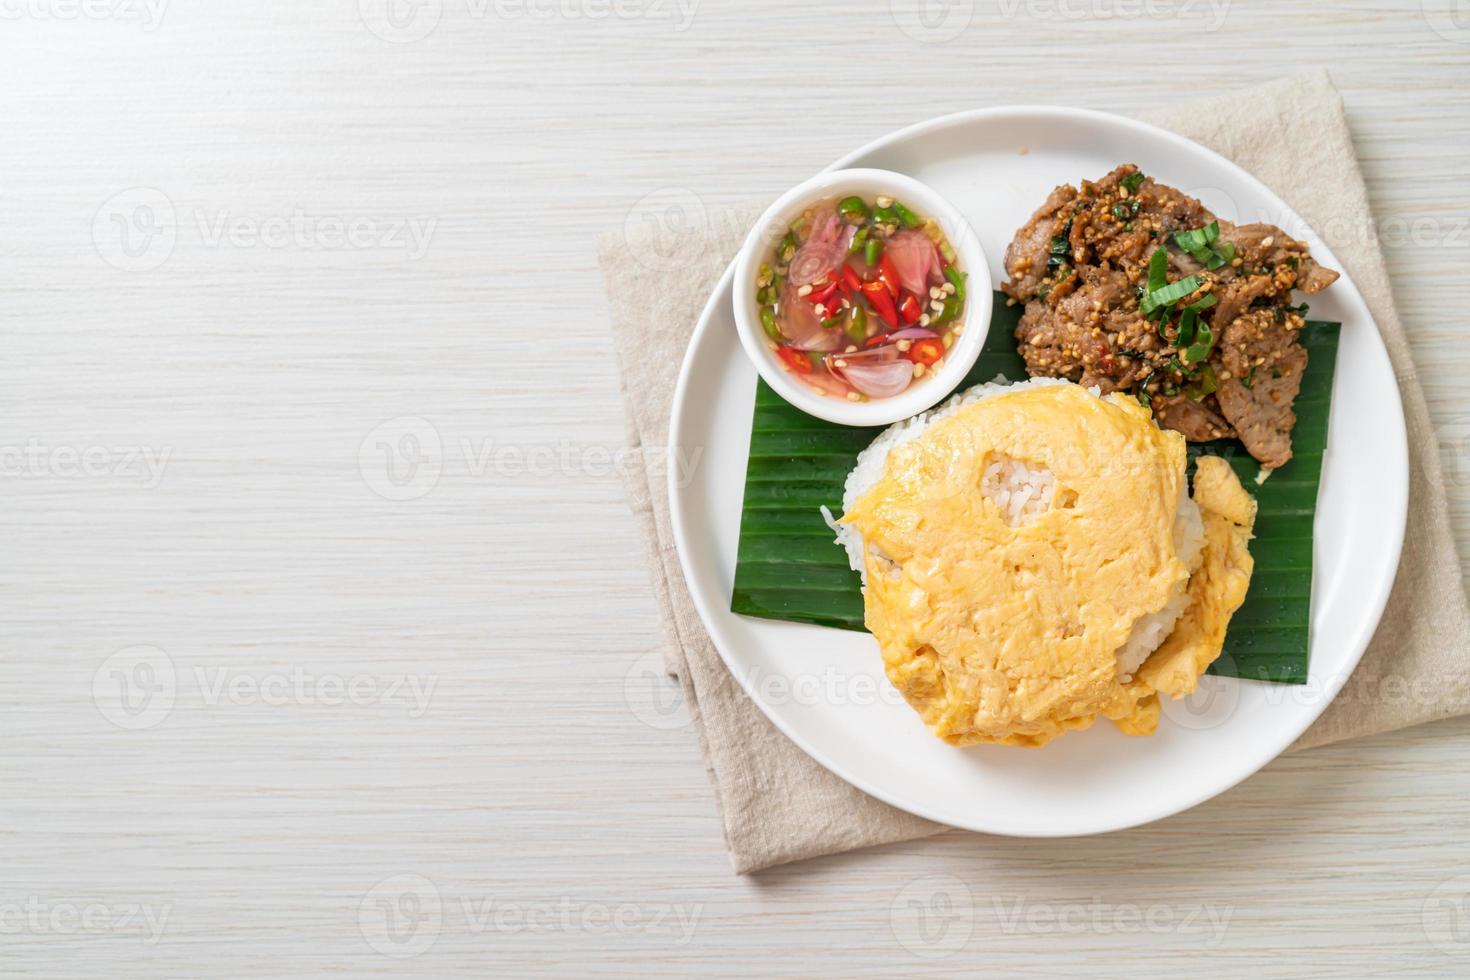 Huevo sobre arroz con cerdo a la parrilla y salsa picante - estilo de comida asiática foto